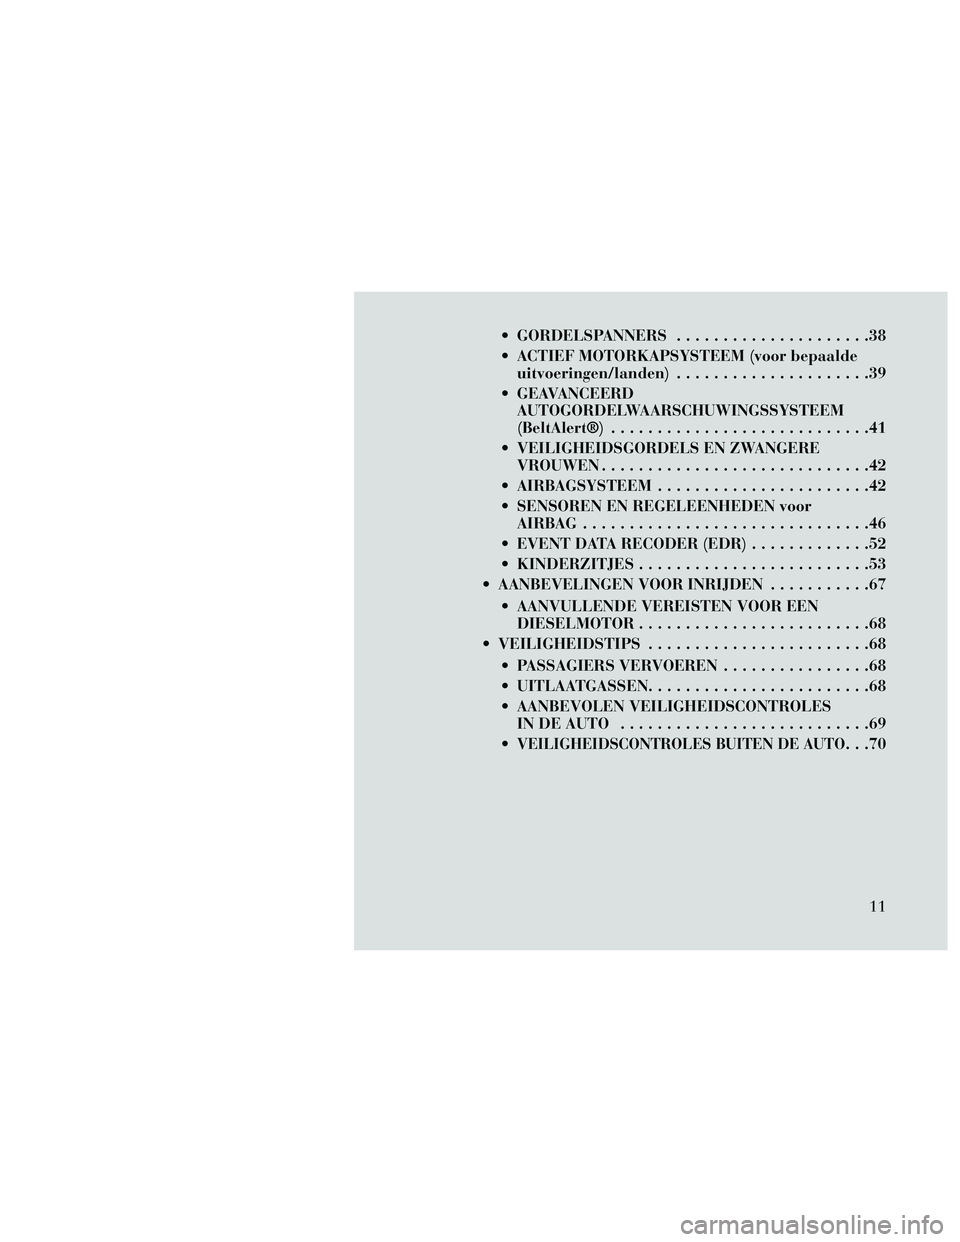 Lancia Thema 2014  Instructieboek (in Dutch)  GORDELSPANNERS.....................38
 ACTIEF MOTORKAPSYSTEEM (voor bepaalde uitvoeringen/landen) .....................39
 GEAVANCEERD AUTOGORDELWAARSCHUWINGSSYSTEEM
(BeltAlert®) ...................